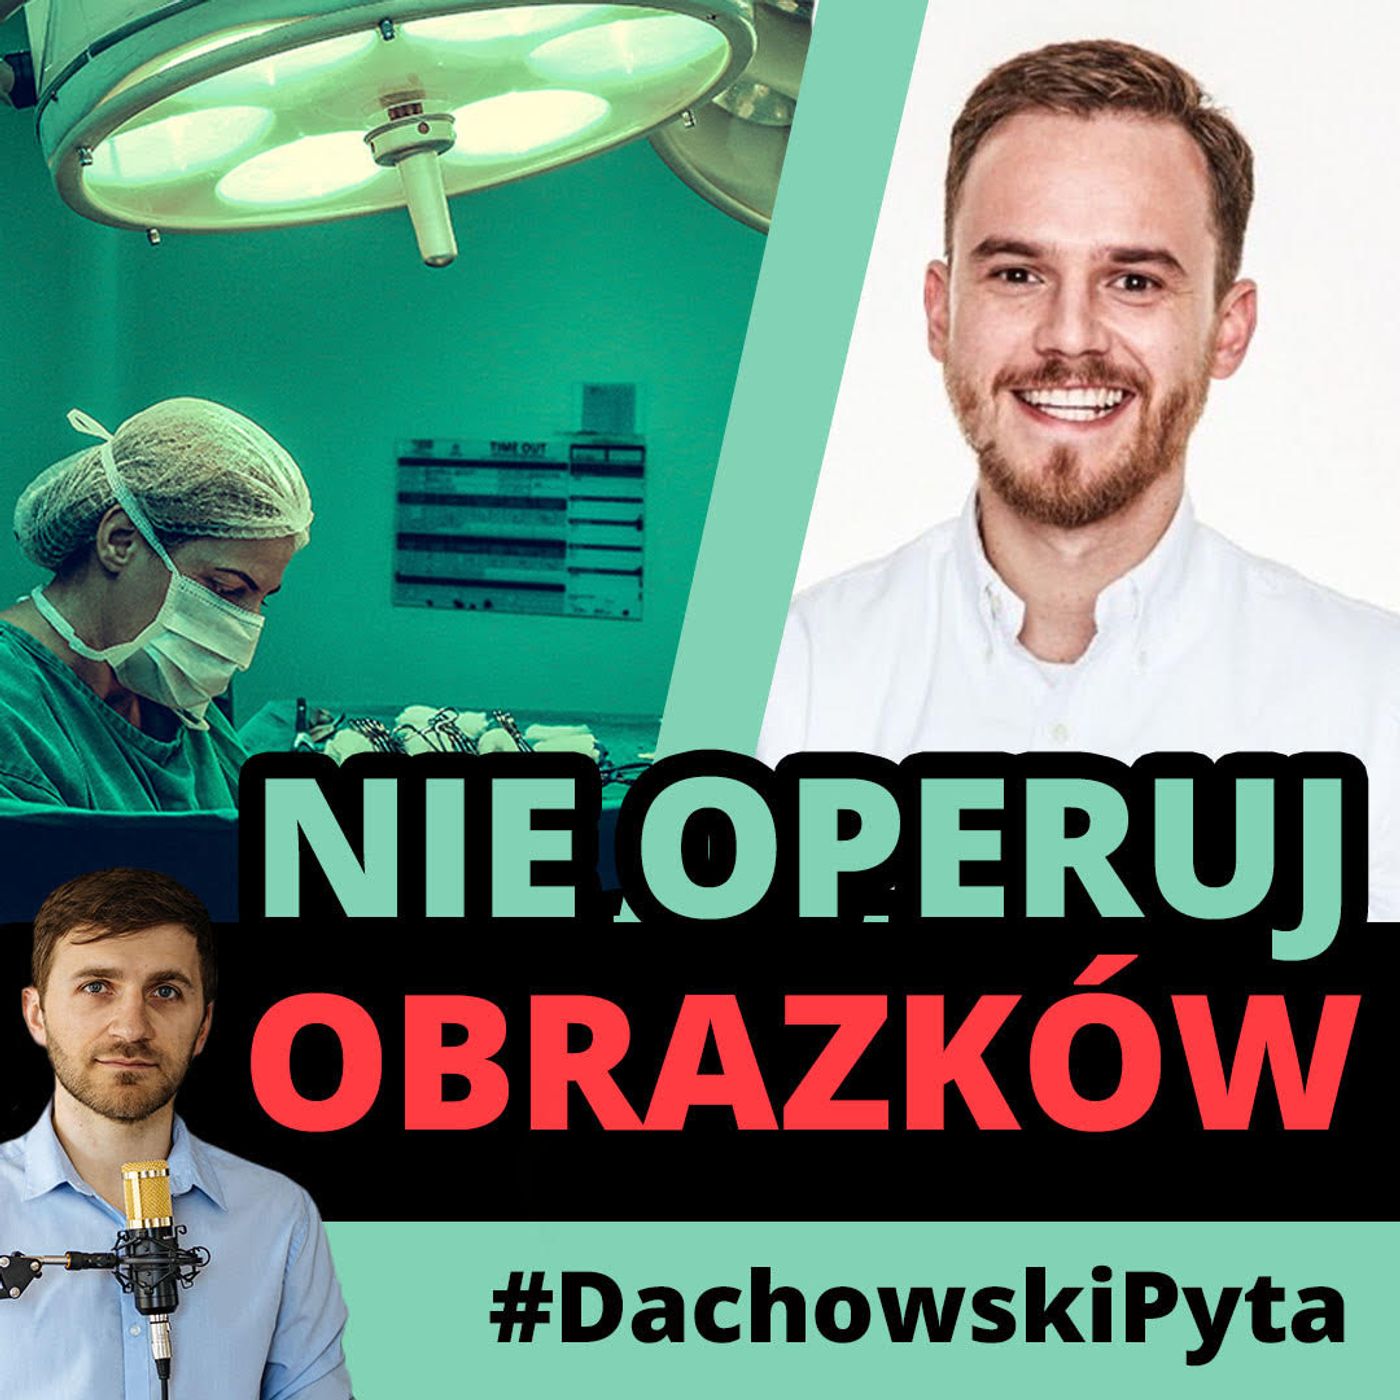 Jakub Jabłoński- dlaczego PRP (osocze bogatopłytkowe) nie pomoże pacjentowi? #82